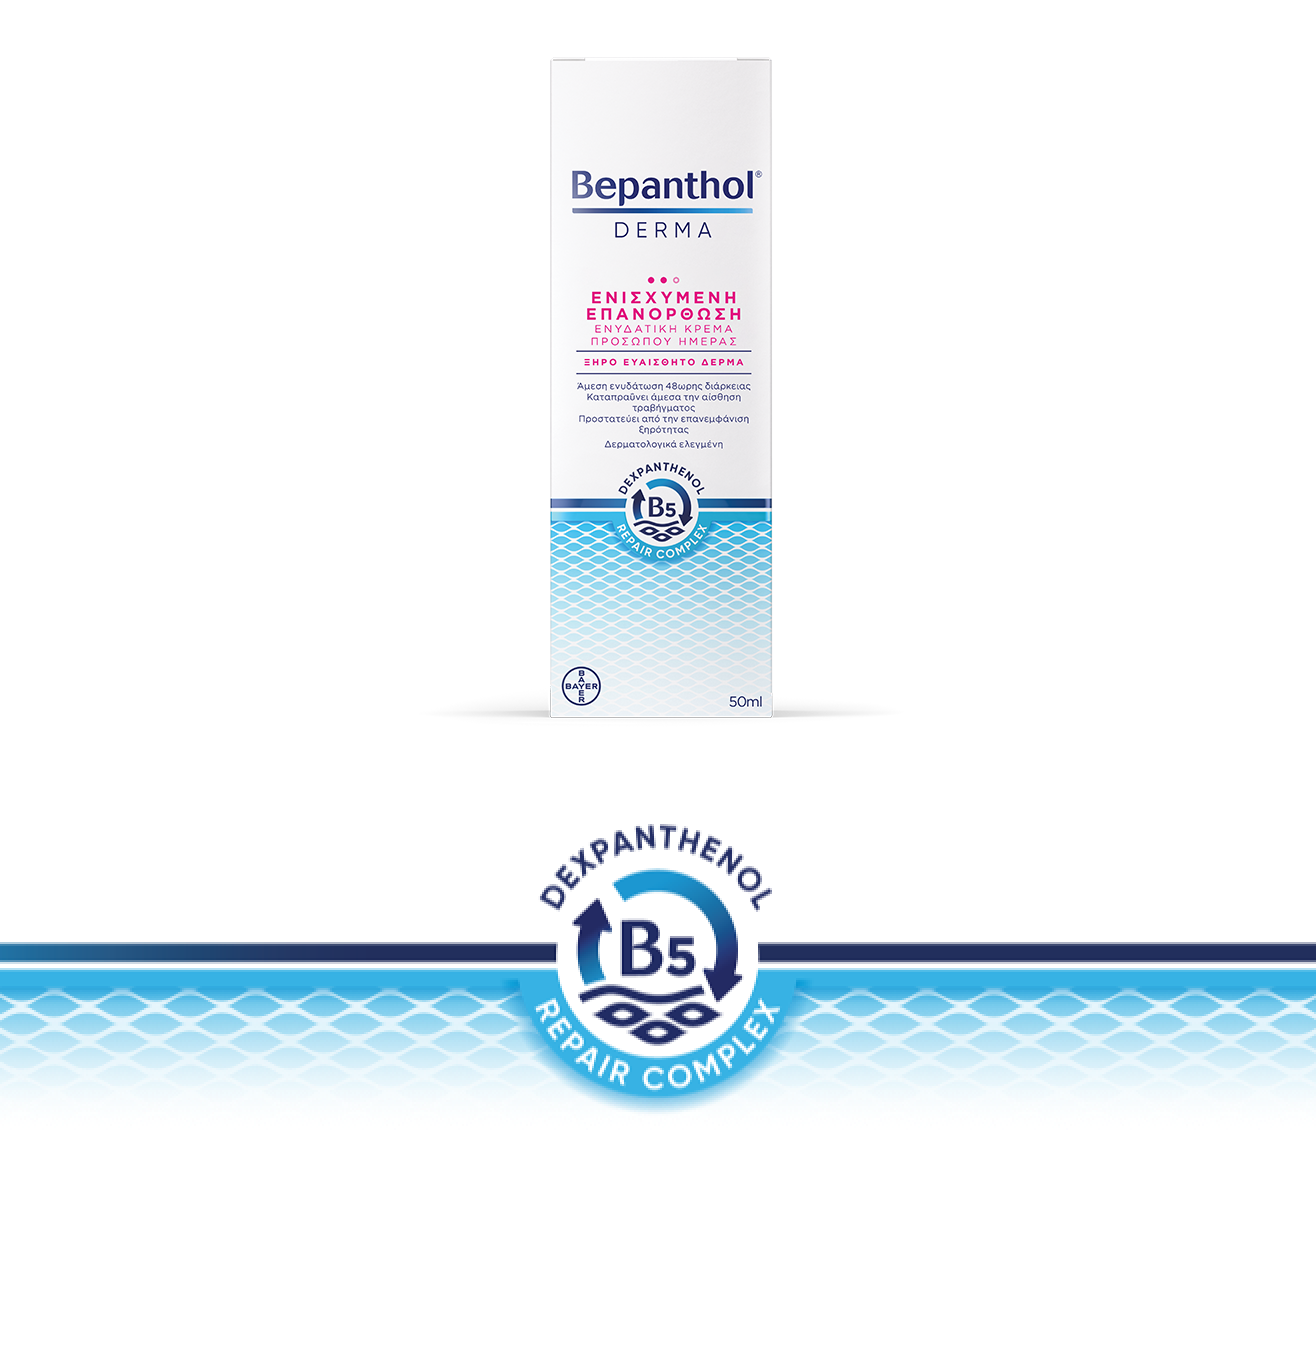 Bepanthol® Derma Ενισχυμένη Επανόρθωση Ενυδατική Κρέμα Προσώπου Ημέρας 50 ml